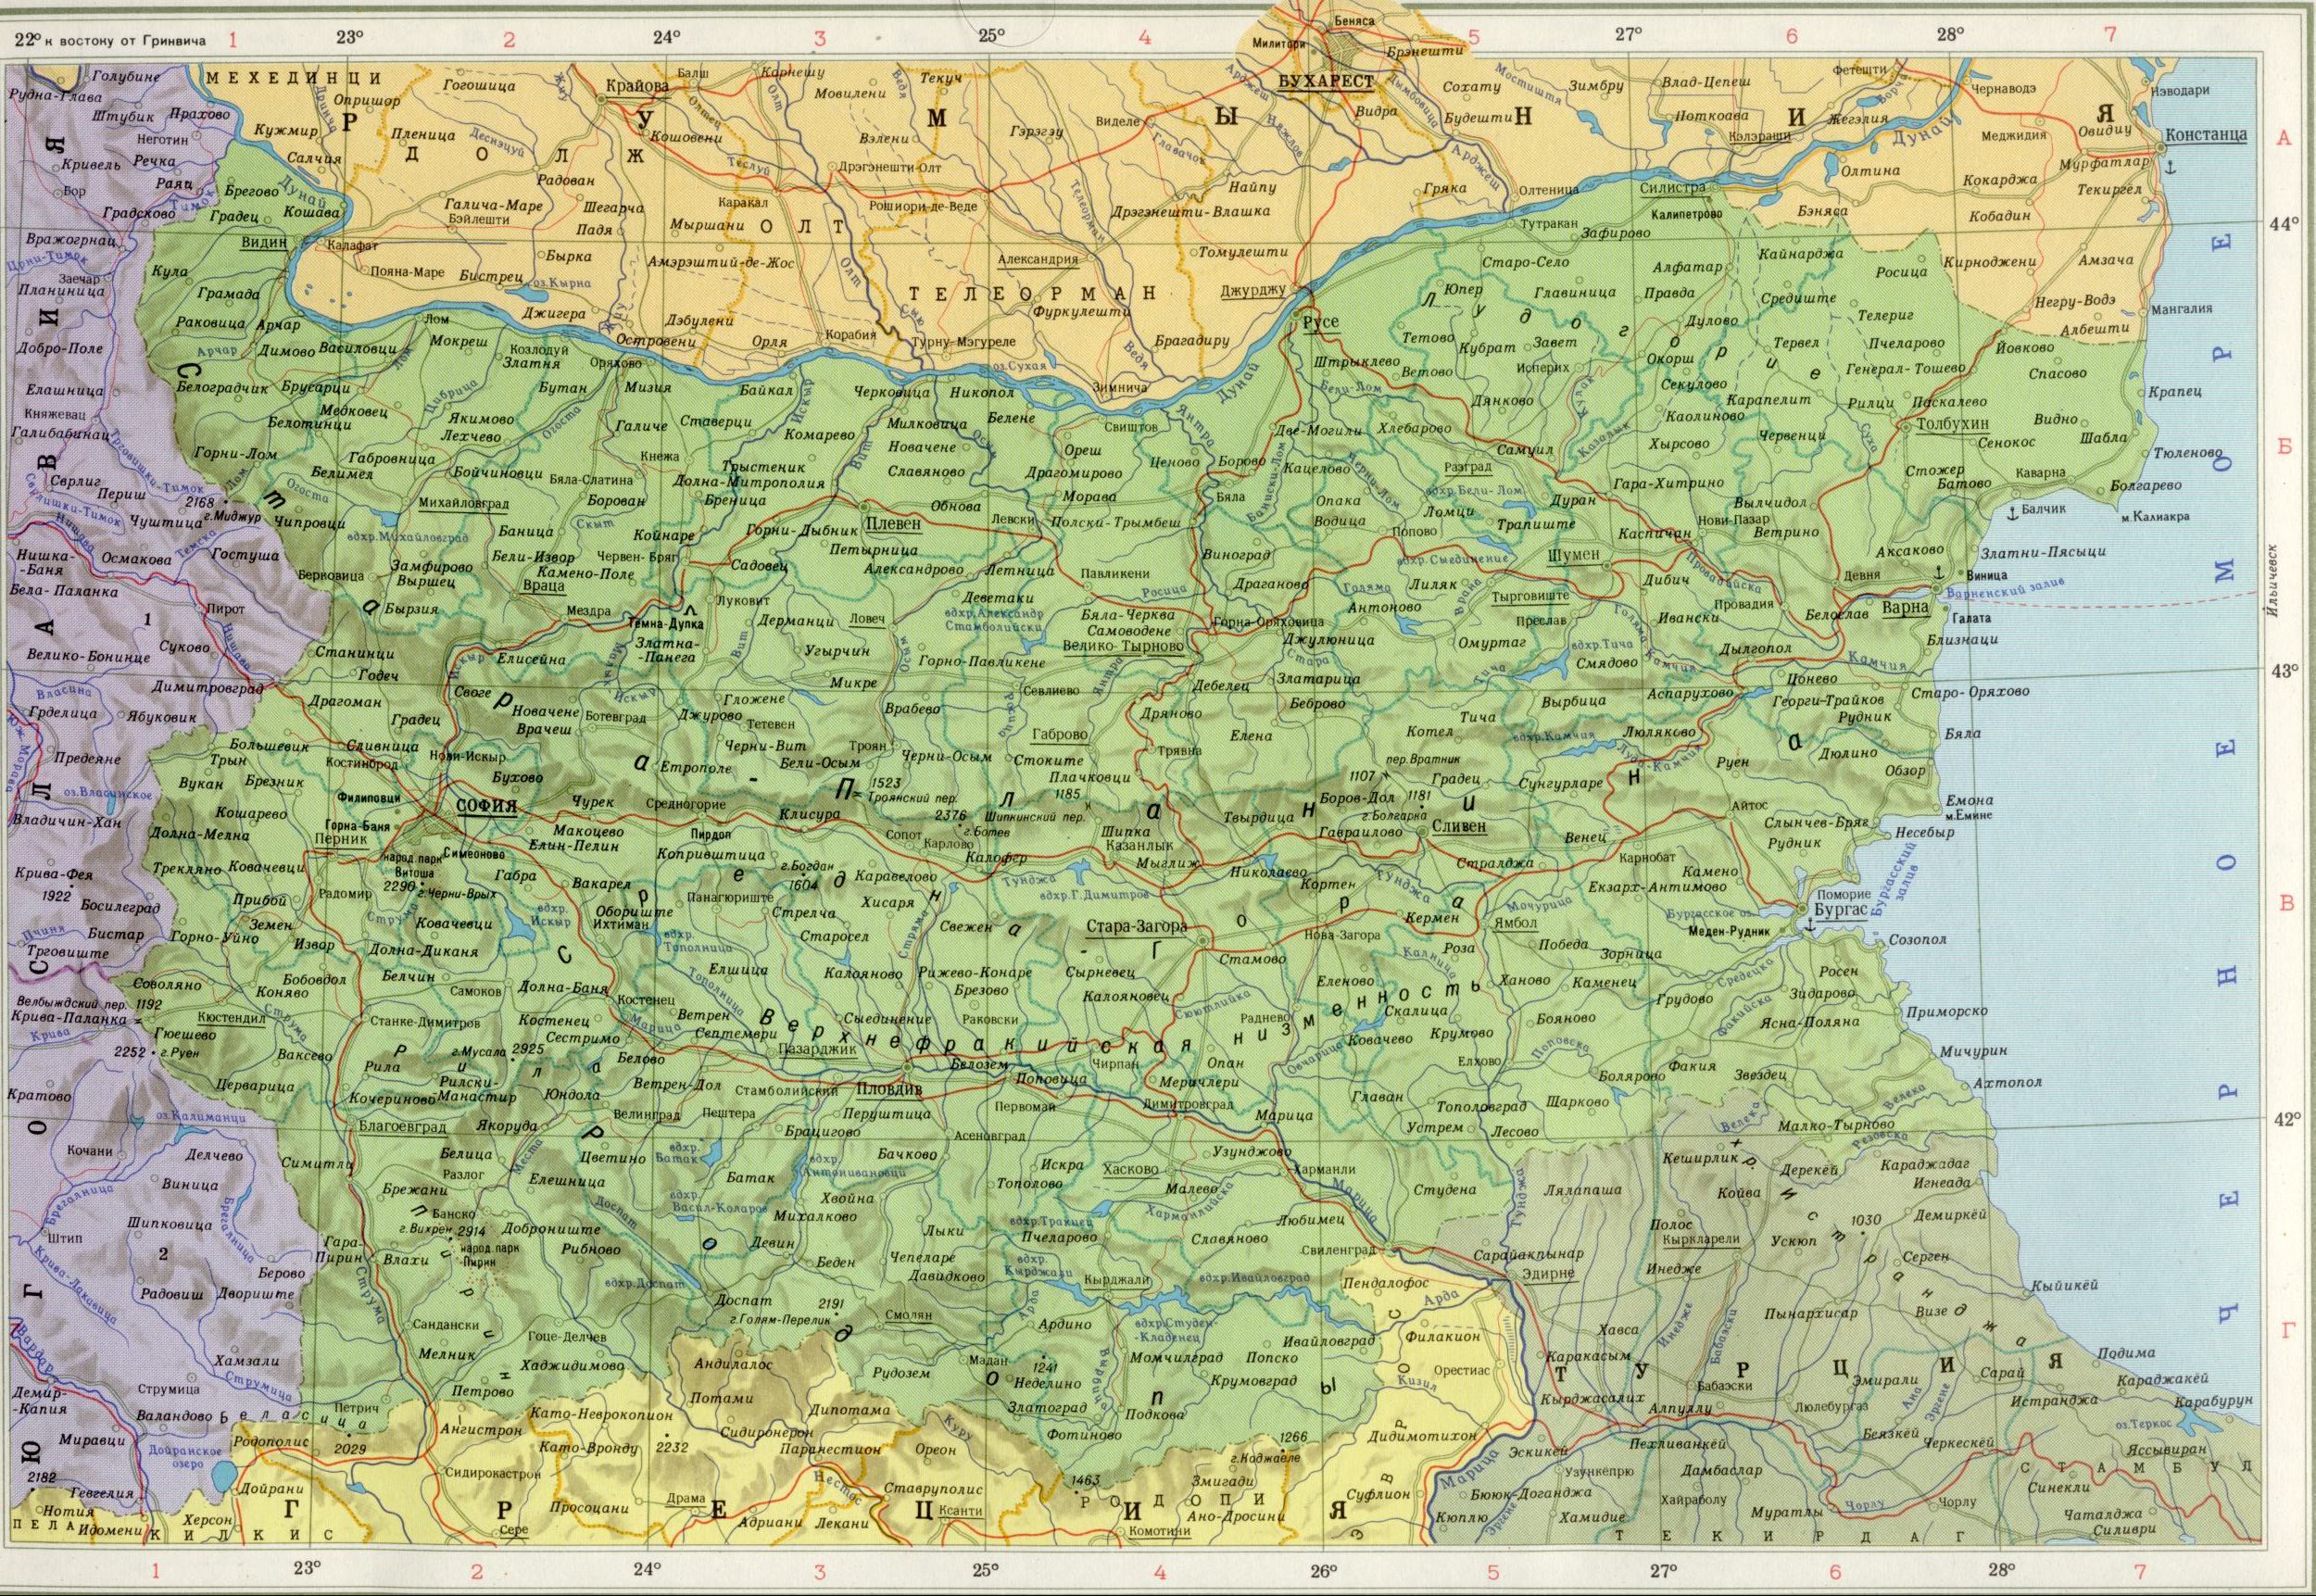 Bulgarien Karte 1cm = 20km. Herunterladen politische Landkarte Europas kostenlos